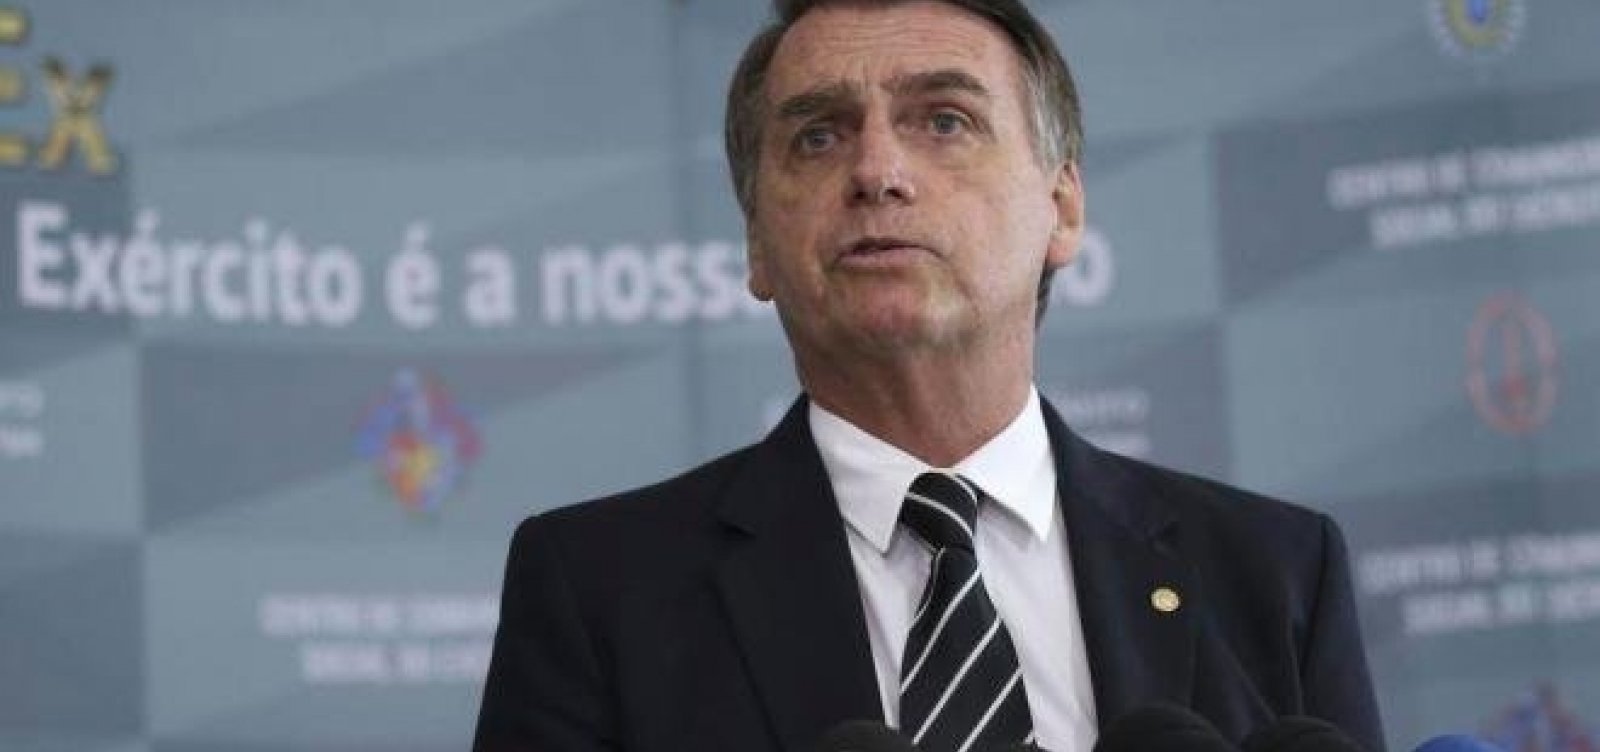 Mesmo com risco de derrota, Bolsonaro não revogará decretos de armas